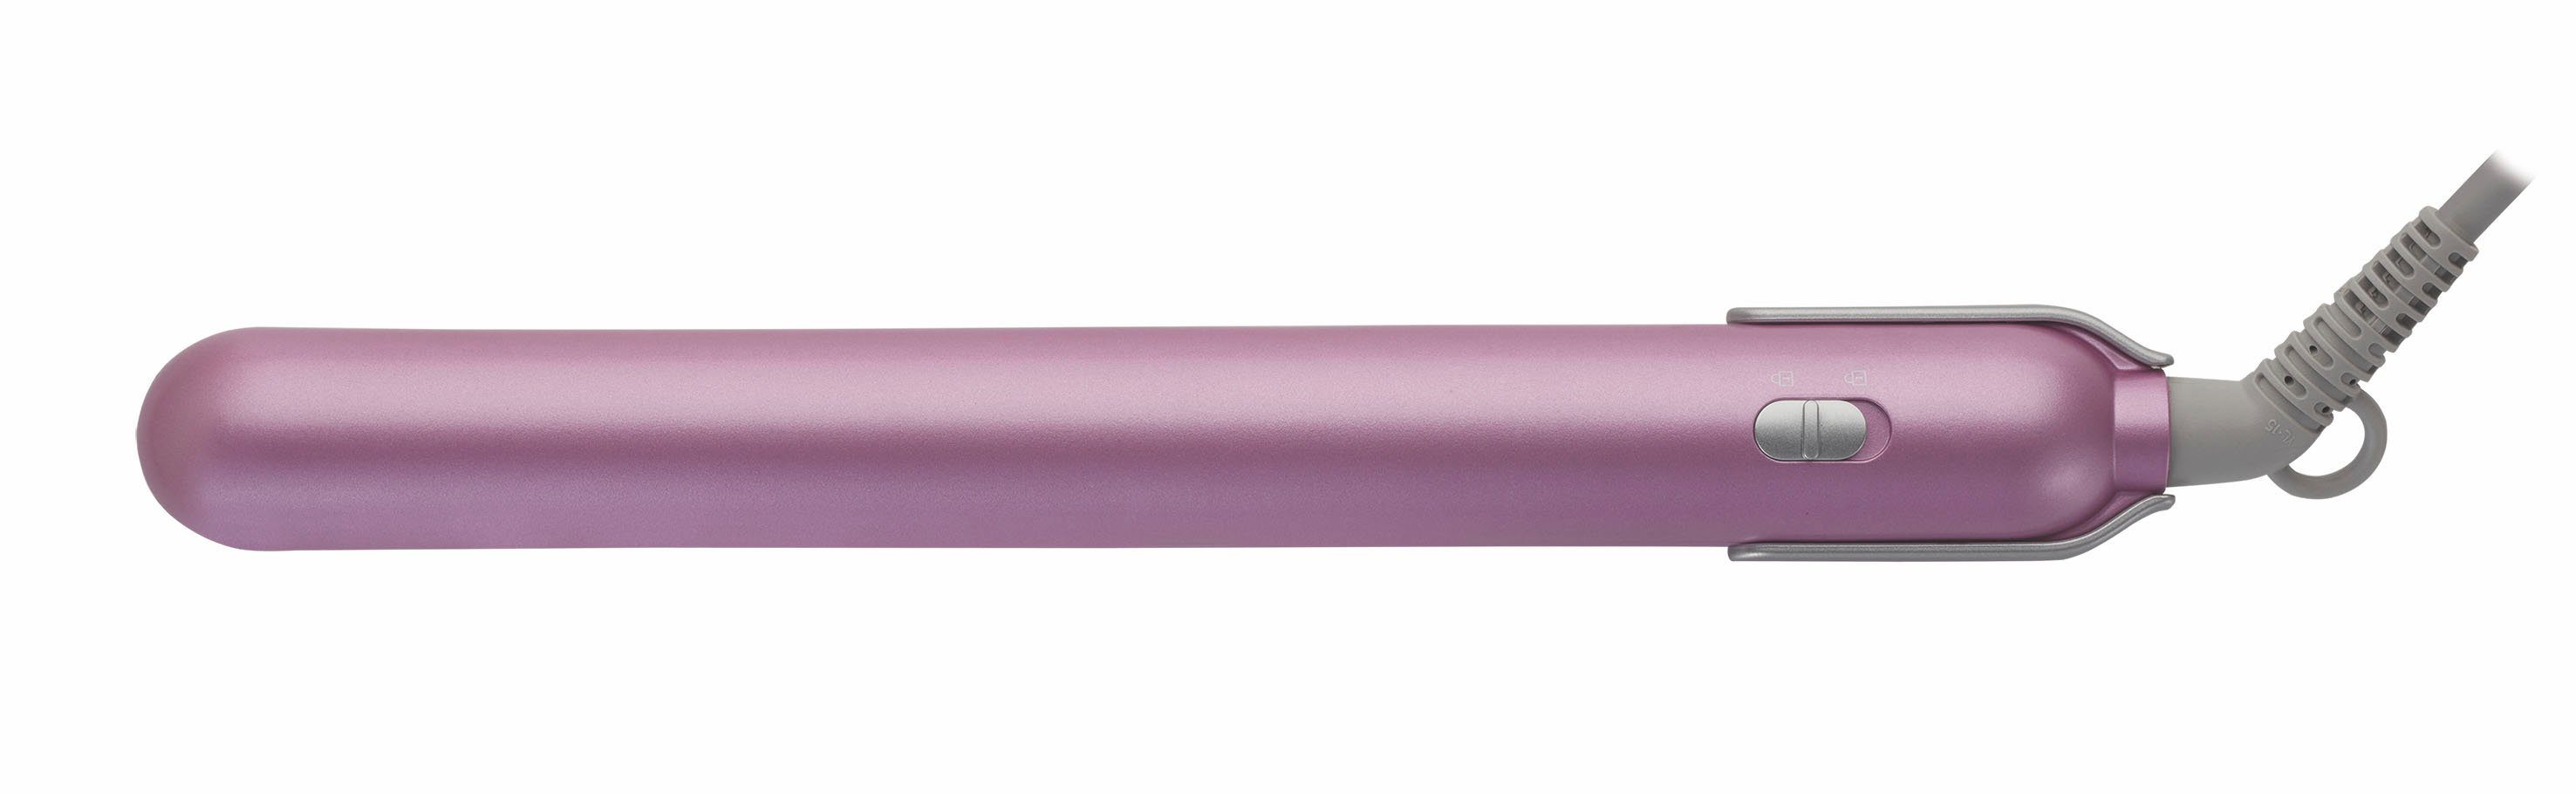 Lotusöl Pink HS Glätteisen Keramikbeschichtung 7130 mit Grundig